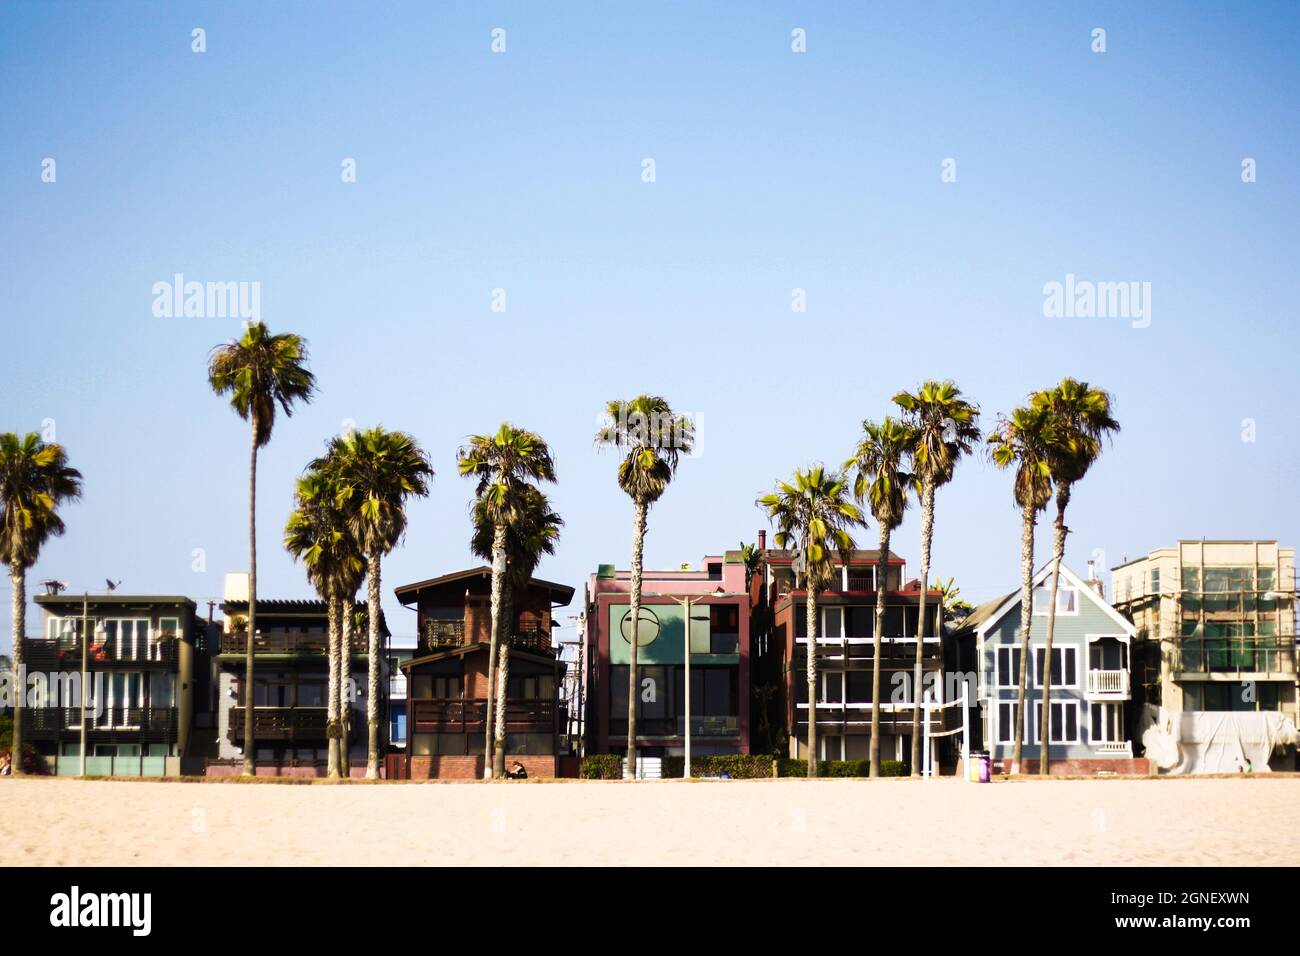 California Dreaming - la spiaggia di Venezia a LOS ANGELES con l'architettura della casa sulla spiaggia, la sabbia e le antiche palme Foto Stock